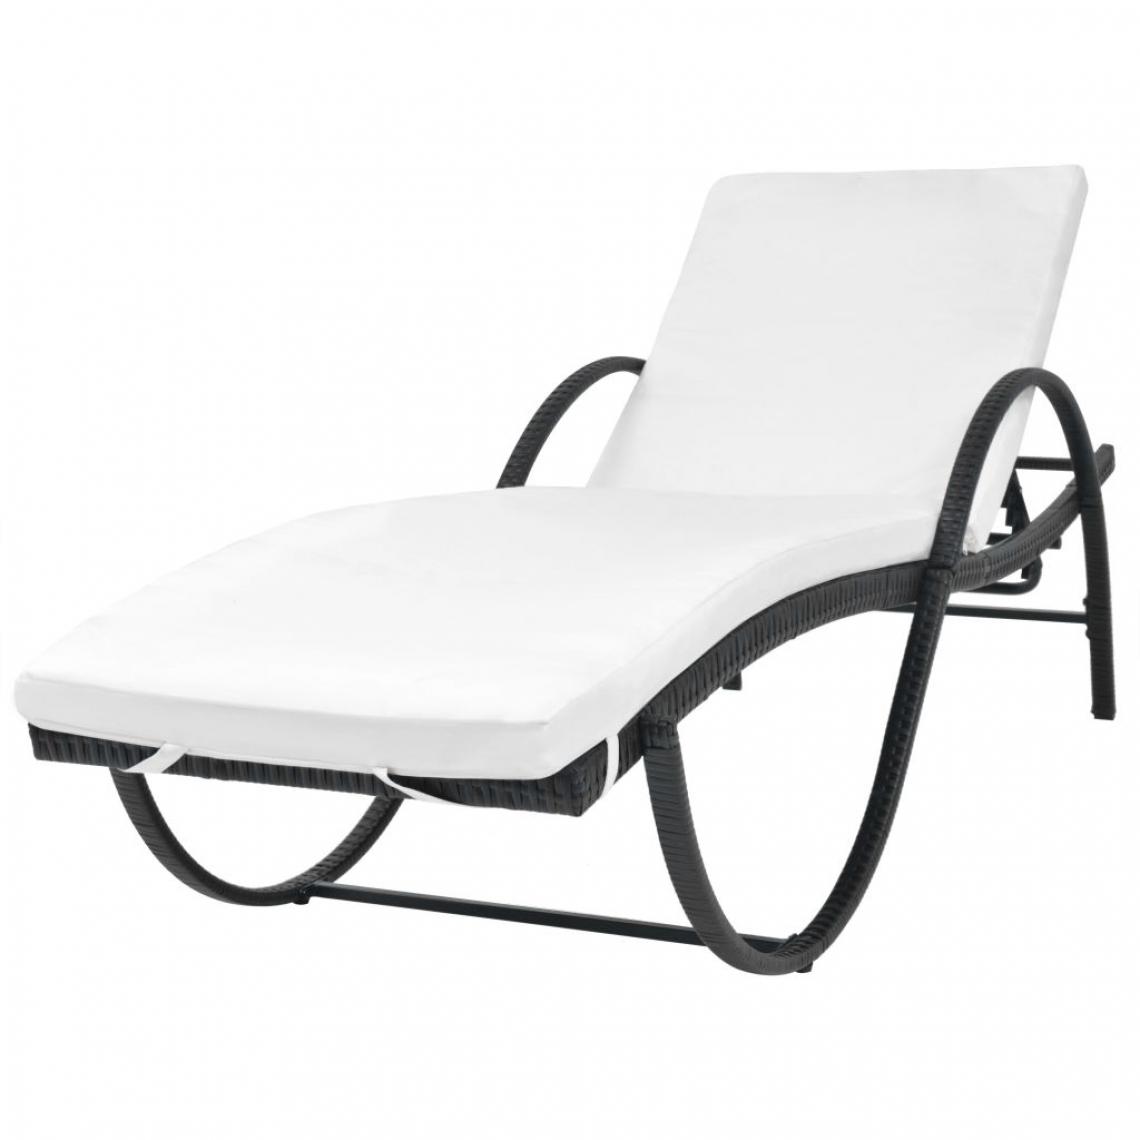 Chunhelife - Chaise longue avec coussin Résine tressée Noir - Transats, chaises longues